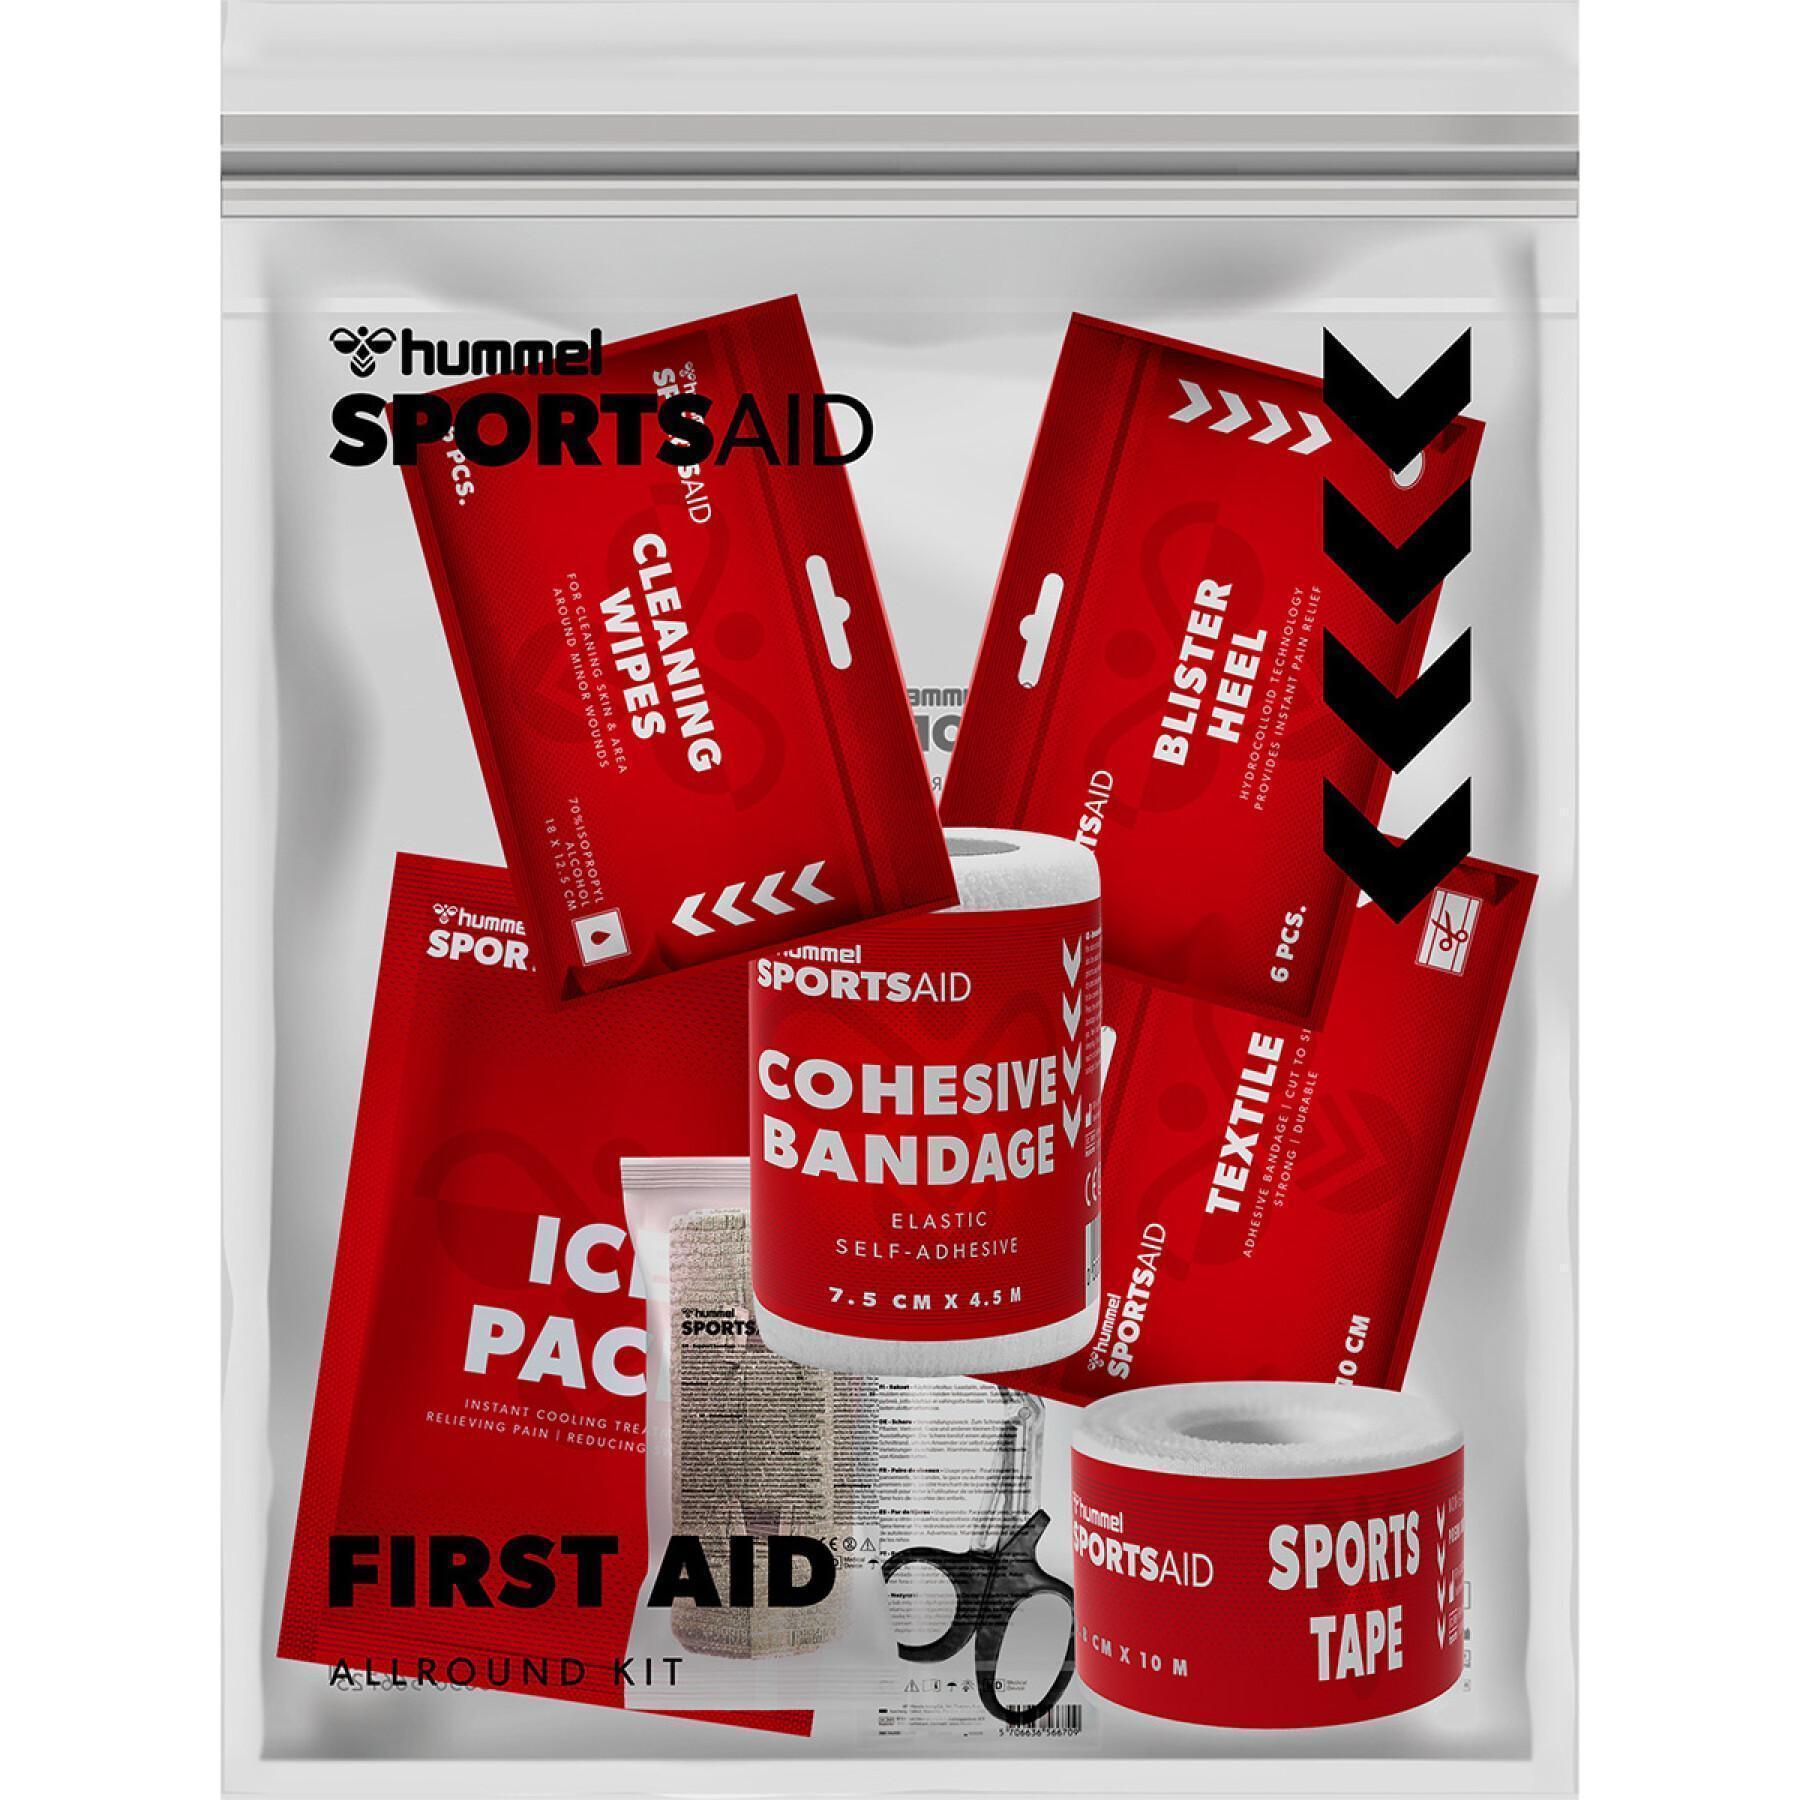 First aid kit Hummel